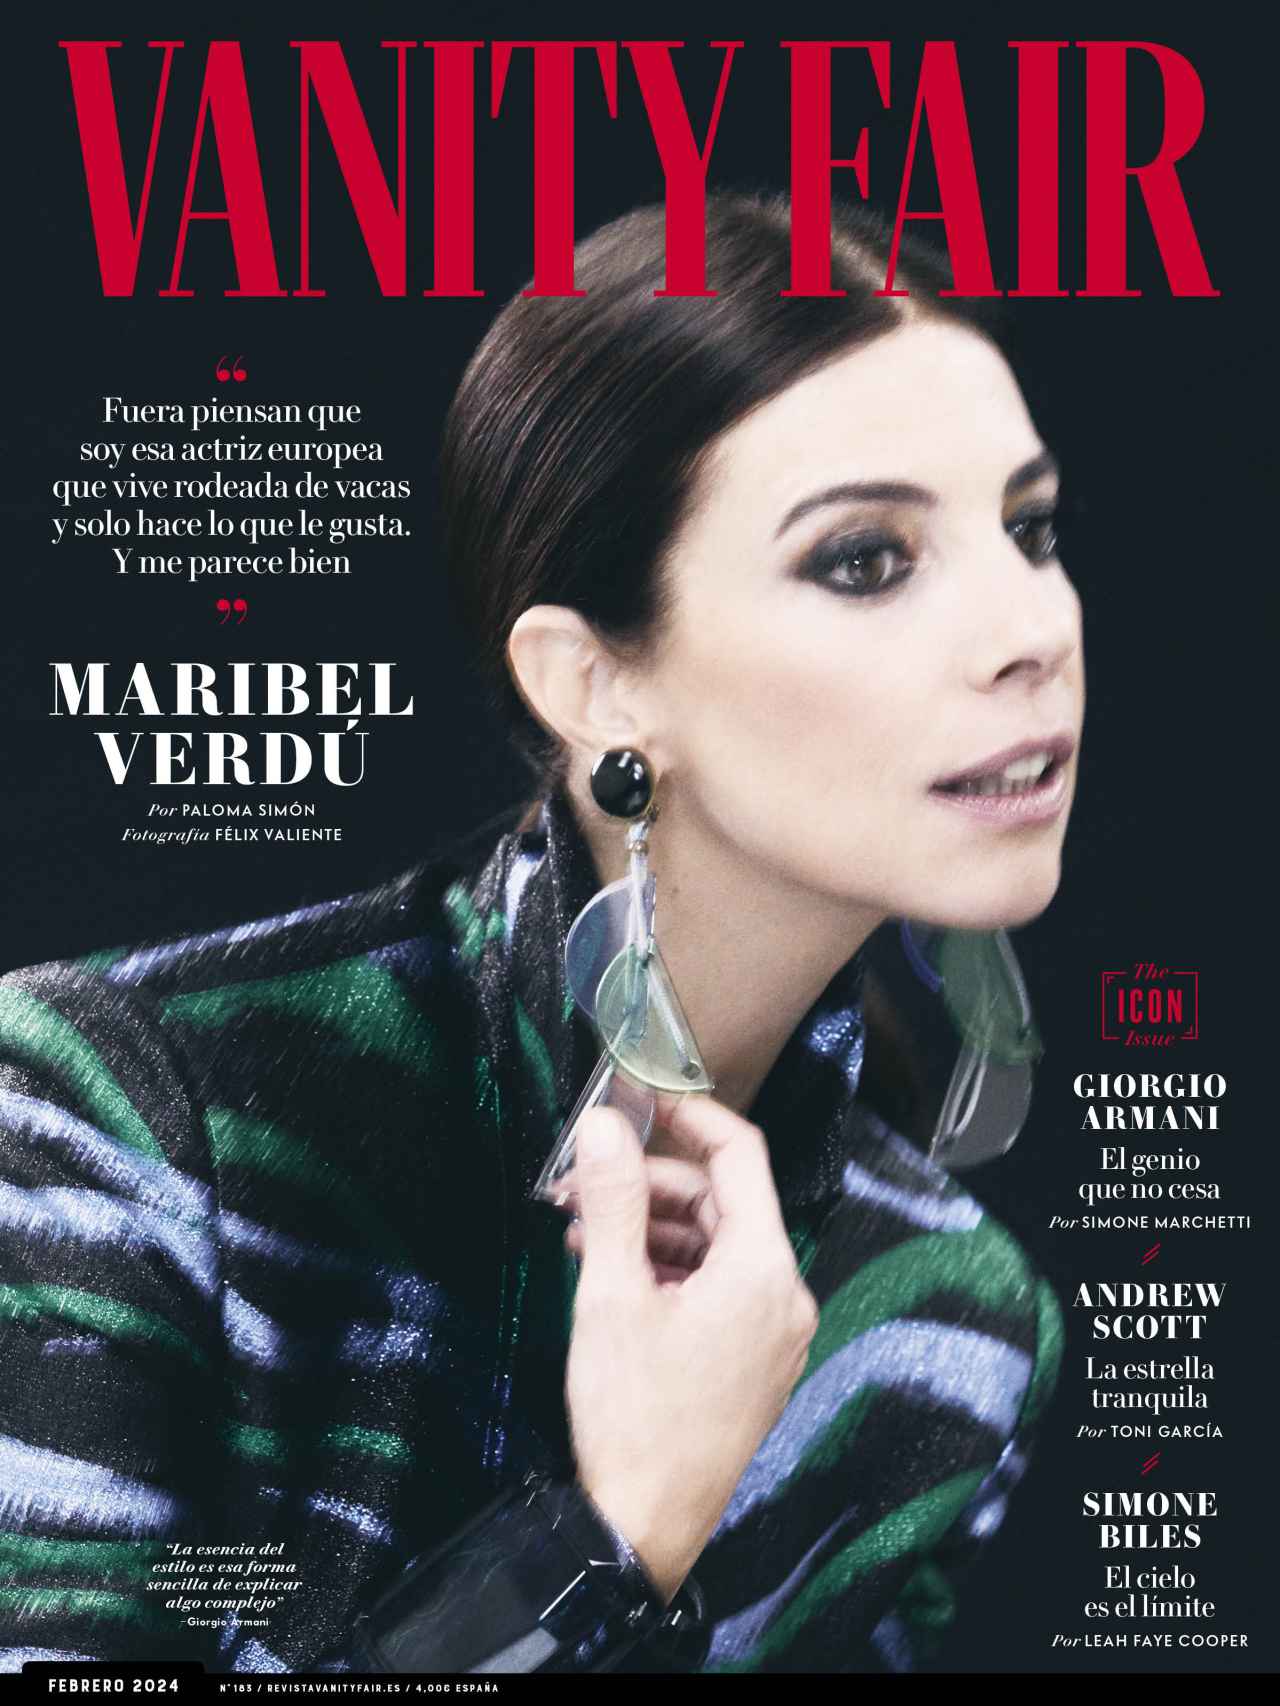 La portada de Vanity Fair España este mes.